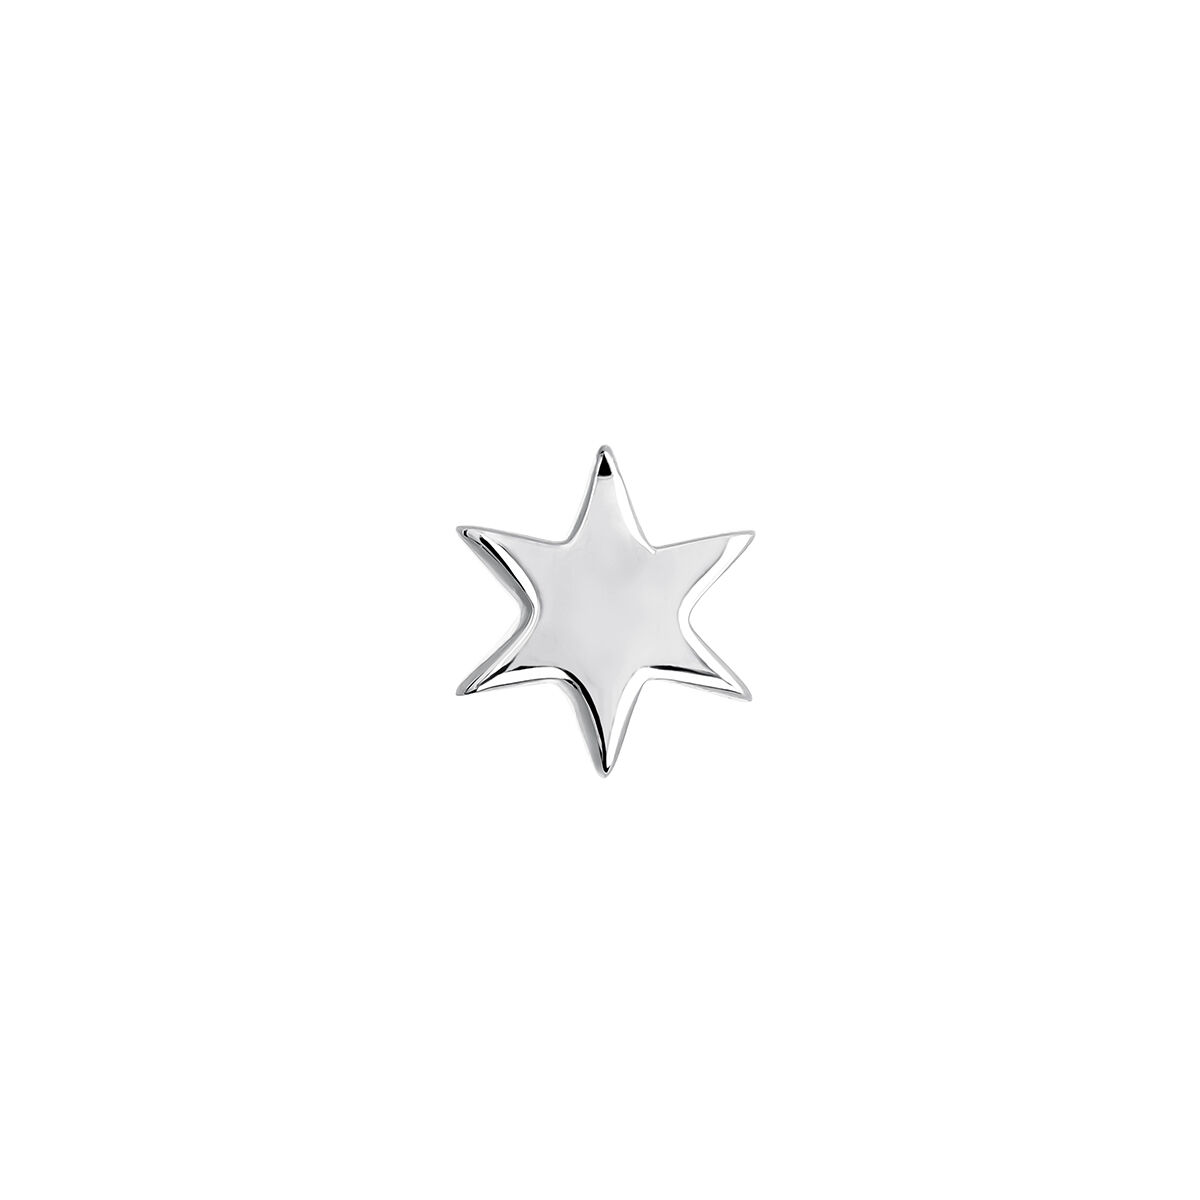 Piercing estrella de oro blanco de 18kt, J03834-01-H-18, mainproduct